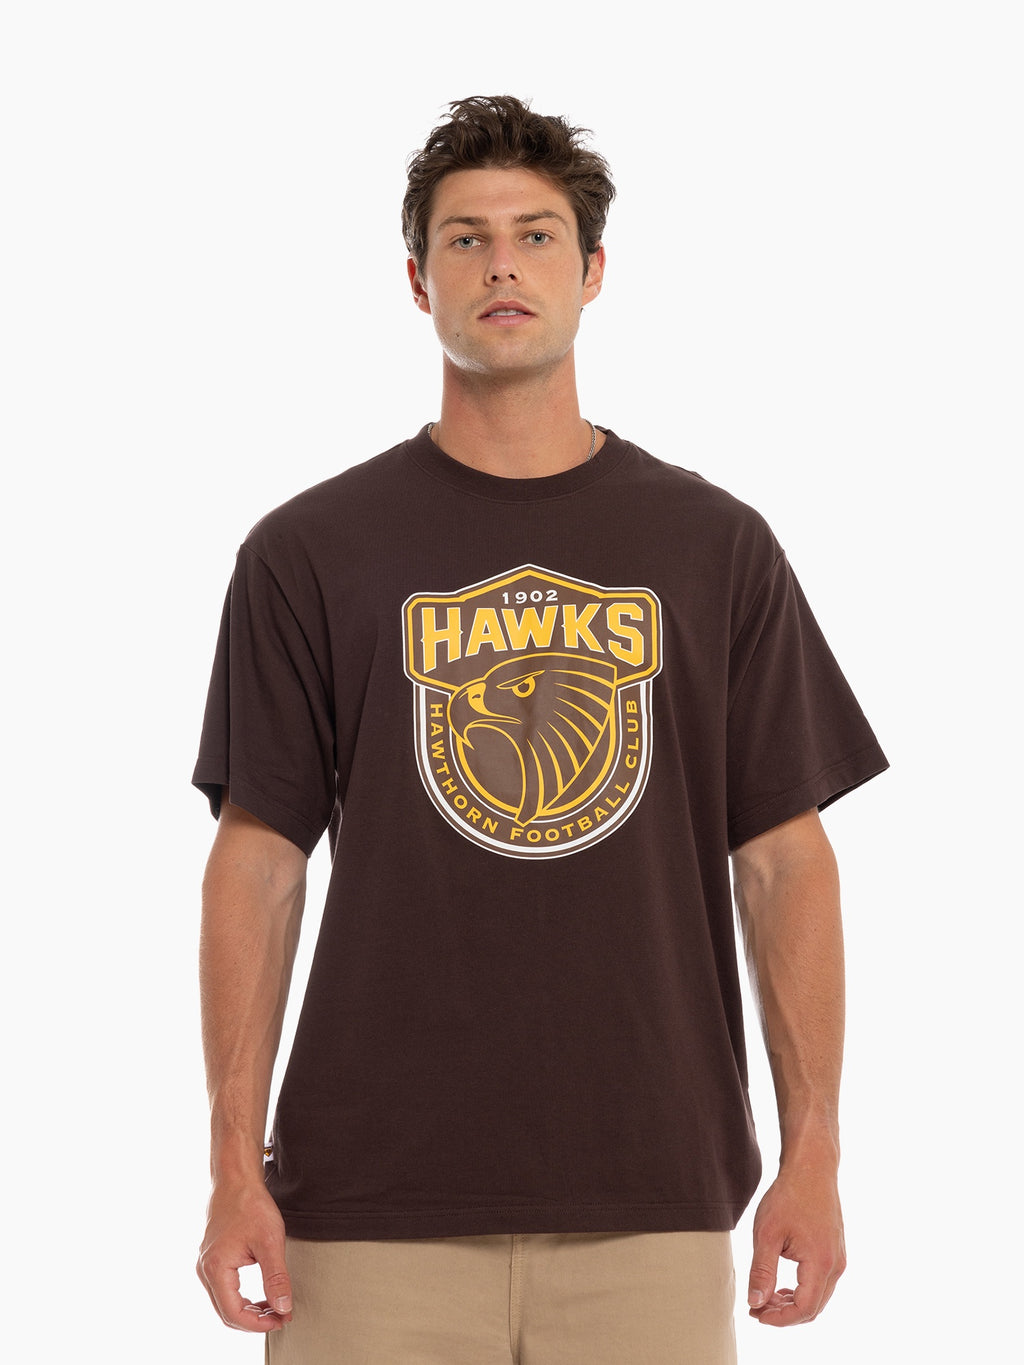 Hawthorn Hawks Supporter Tee